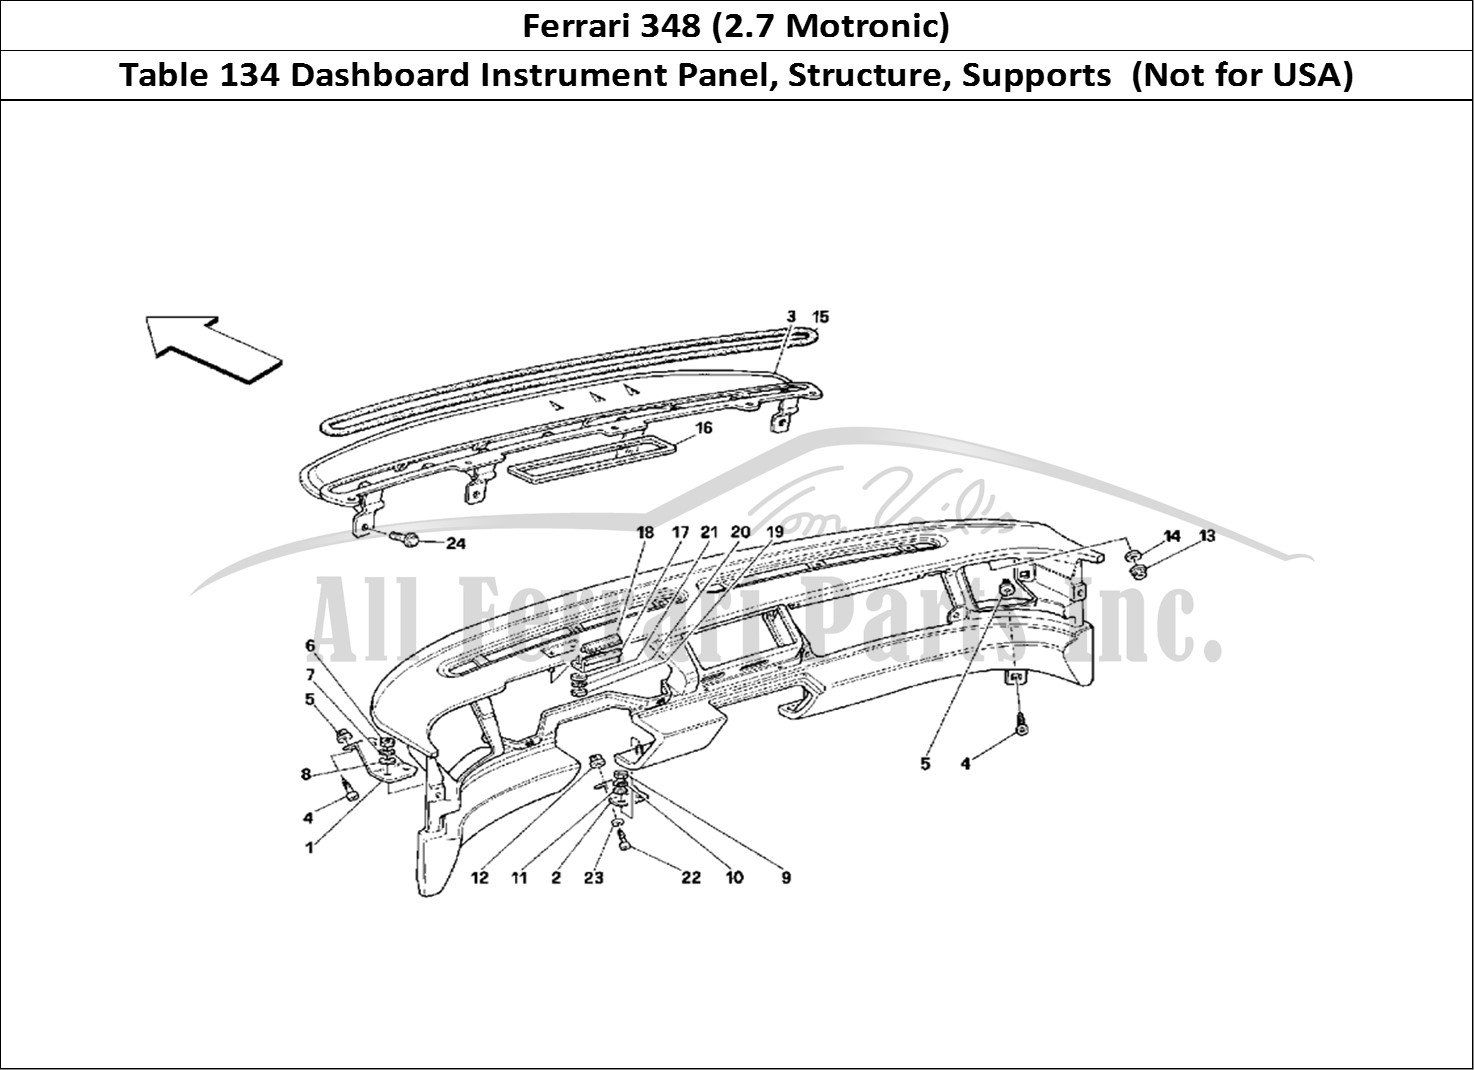 Ferrari Parts Ferrari 348 (2.7 Motronic) Page 134 Dashboard - Structure and